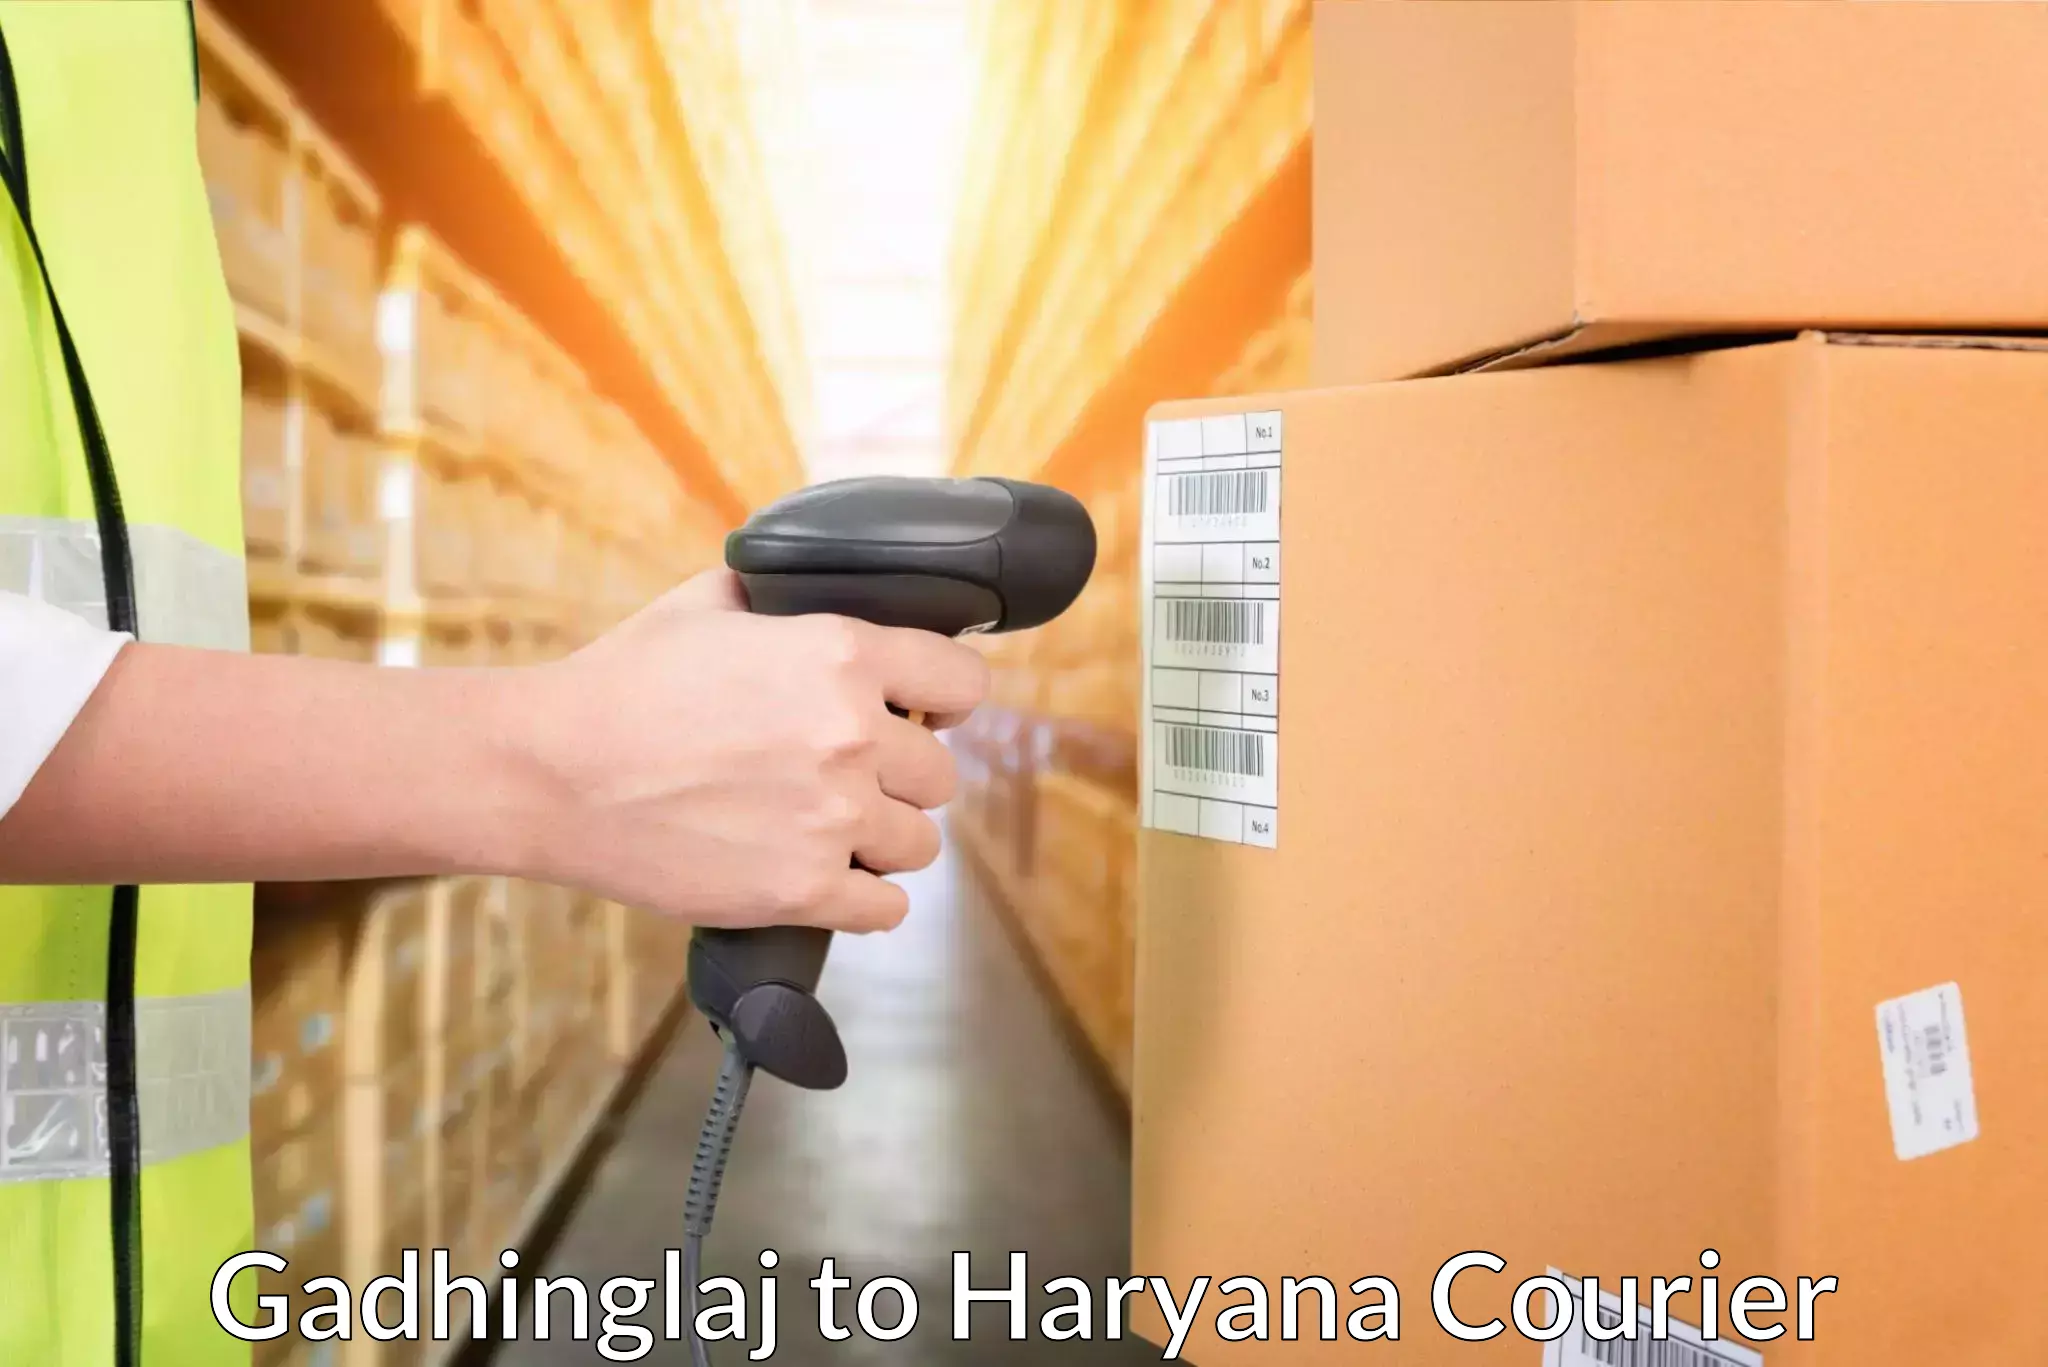 Corporate courier solutions Gadhinglaj to Bilaspur Haryana